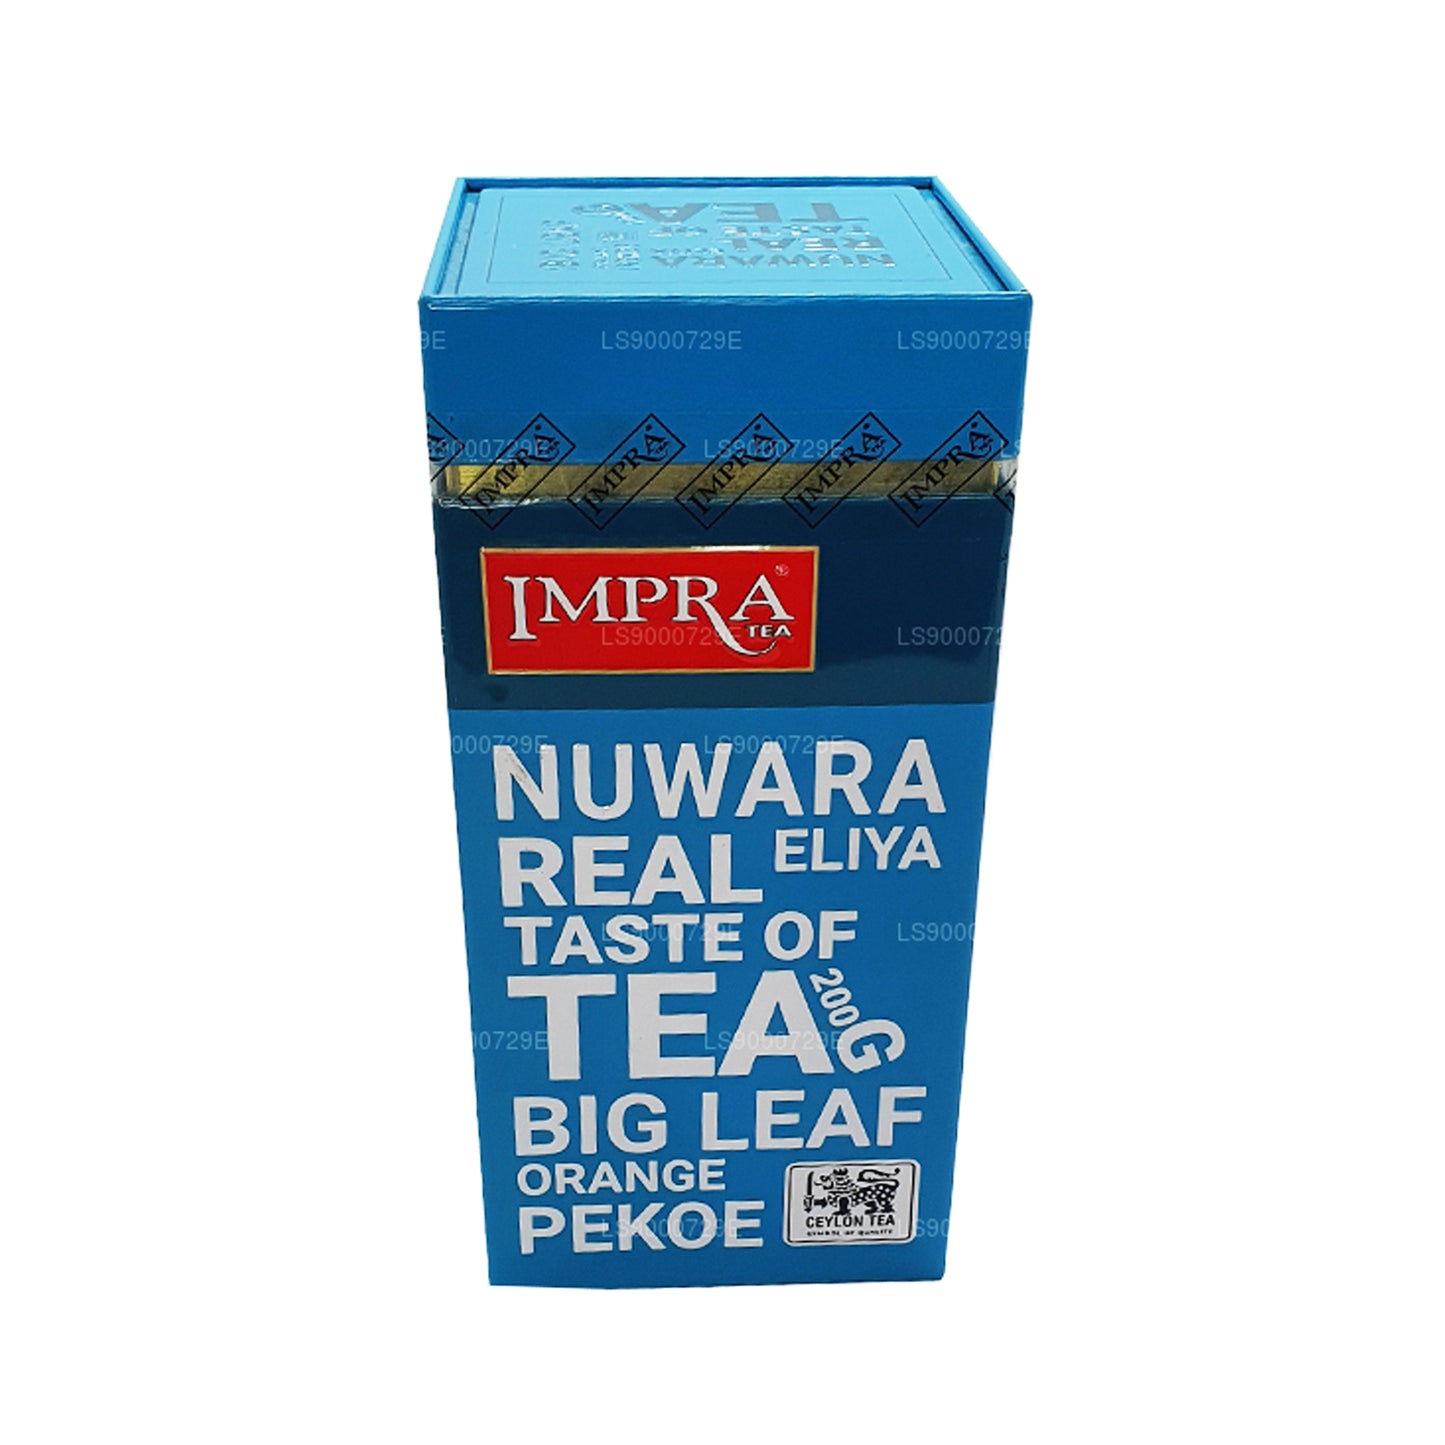 Impra Nuwara Eliya Big Leaf Fleischdose (200 g)